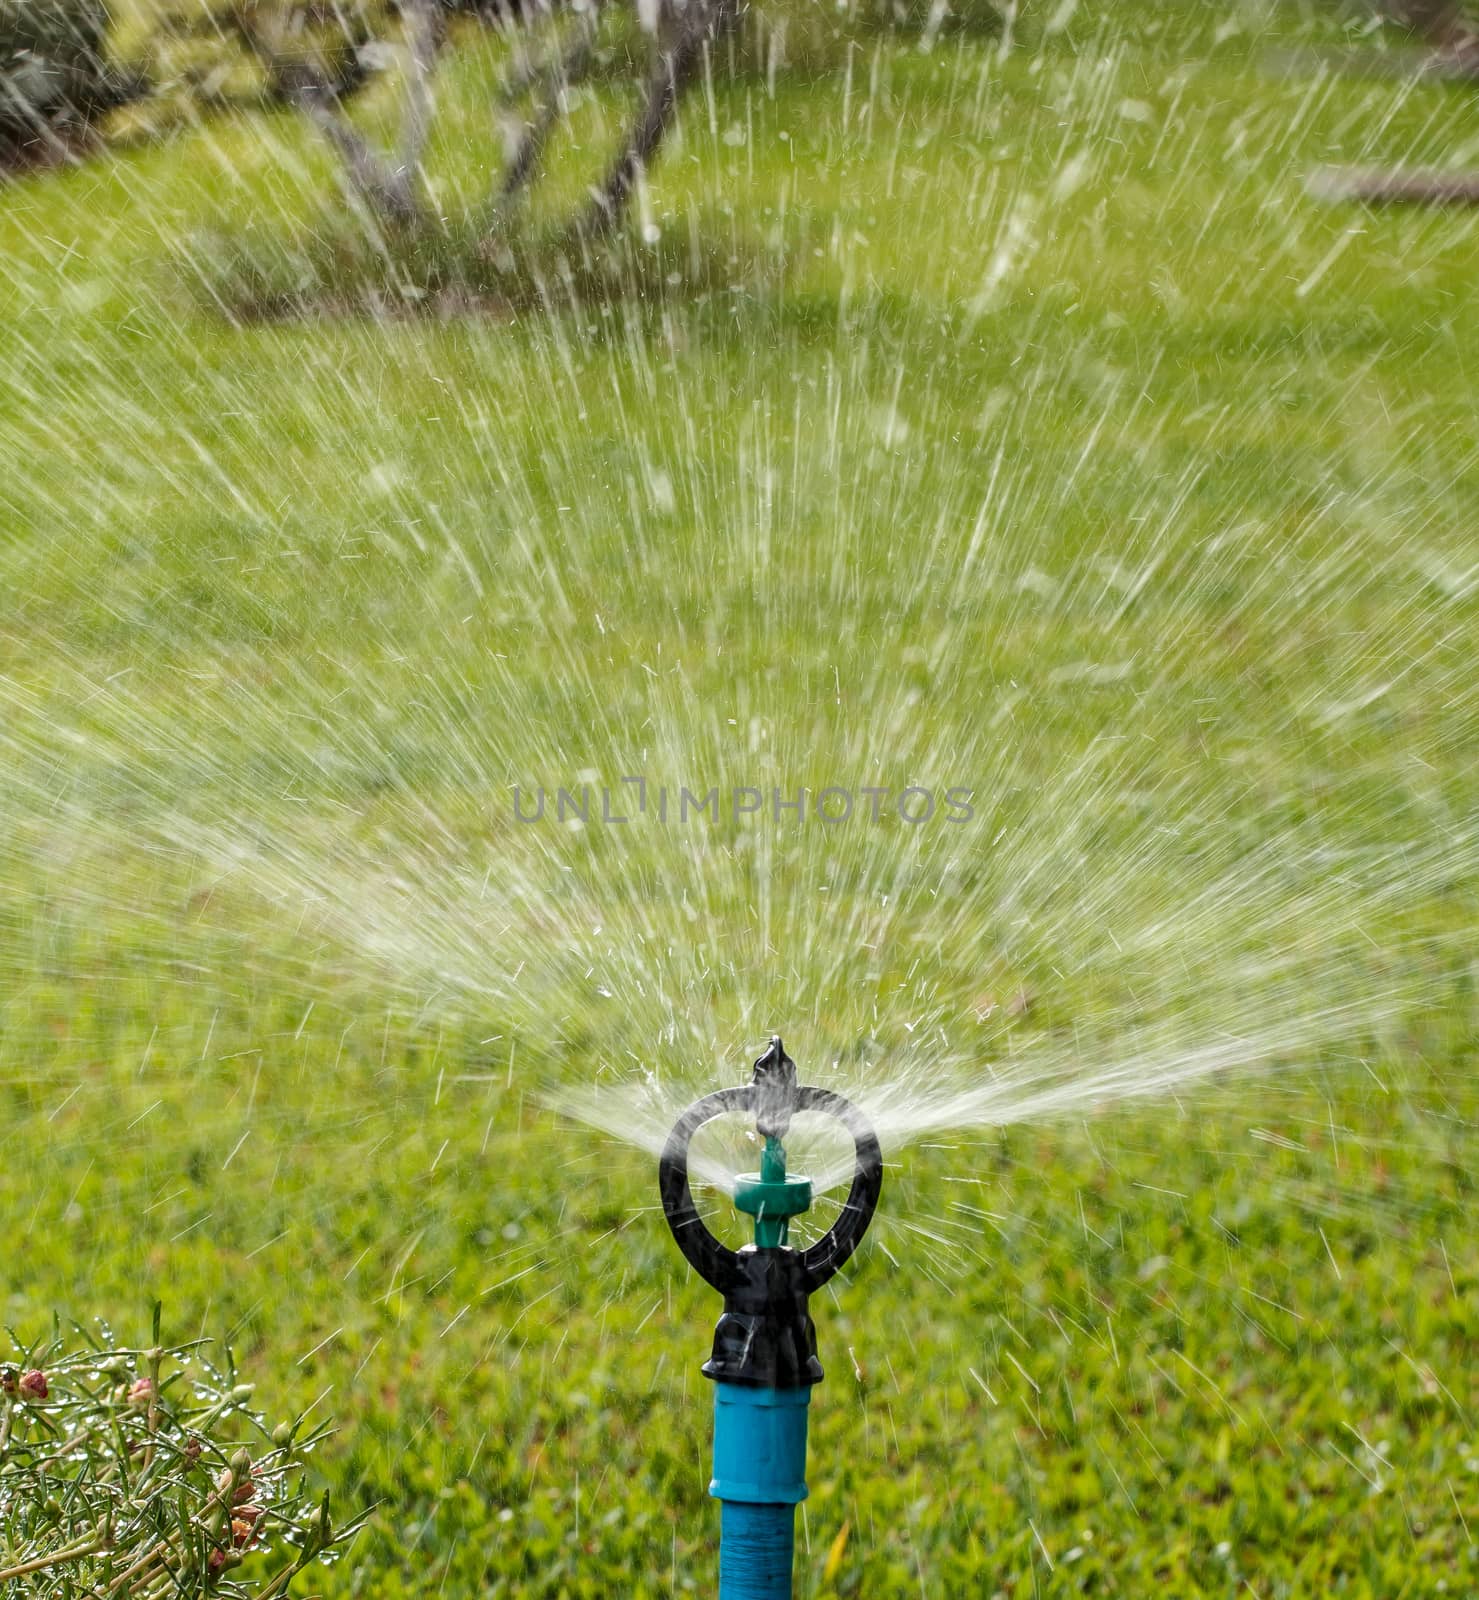 Sprinkler watering by Praphan